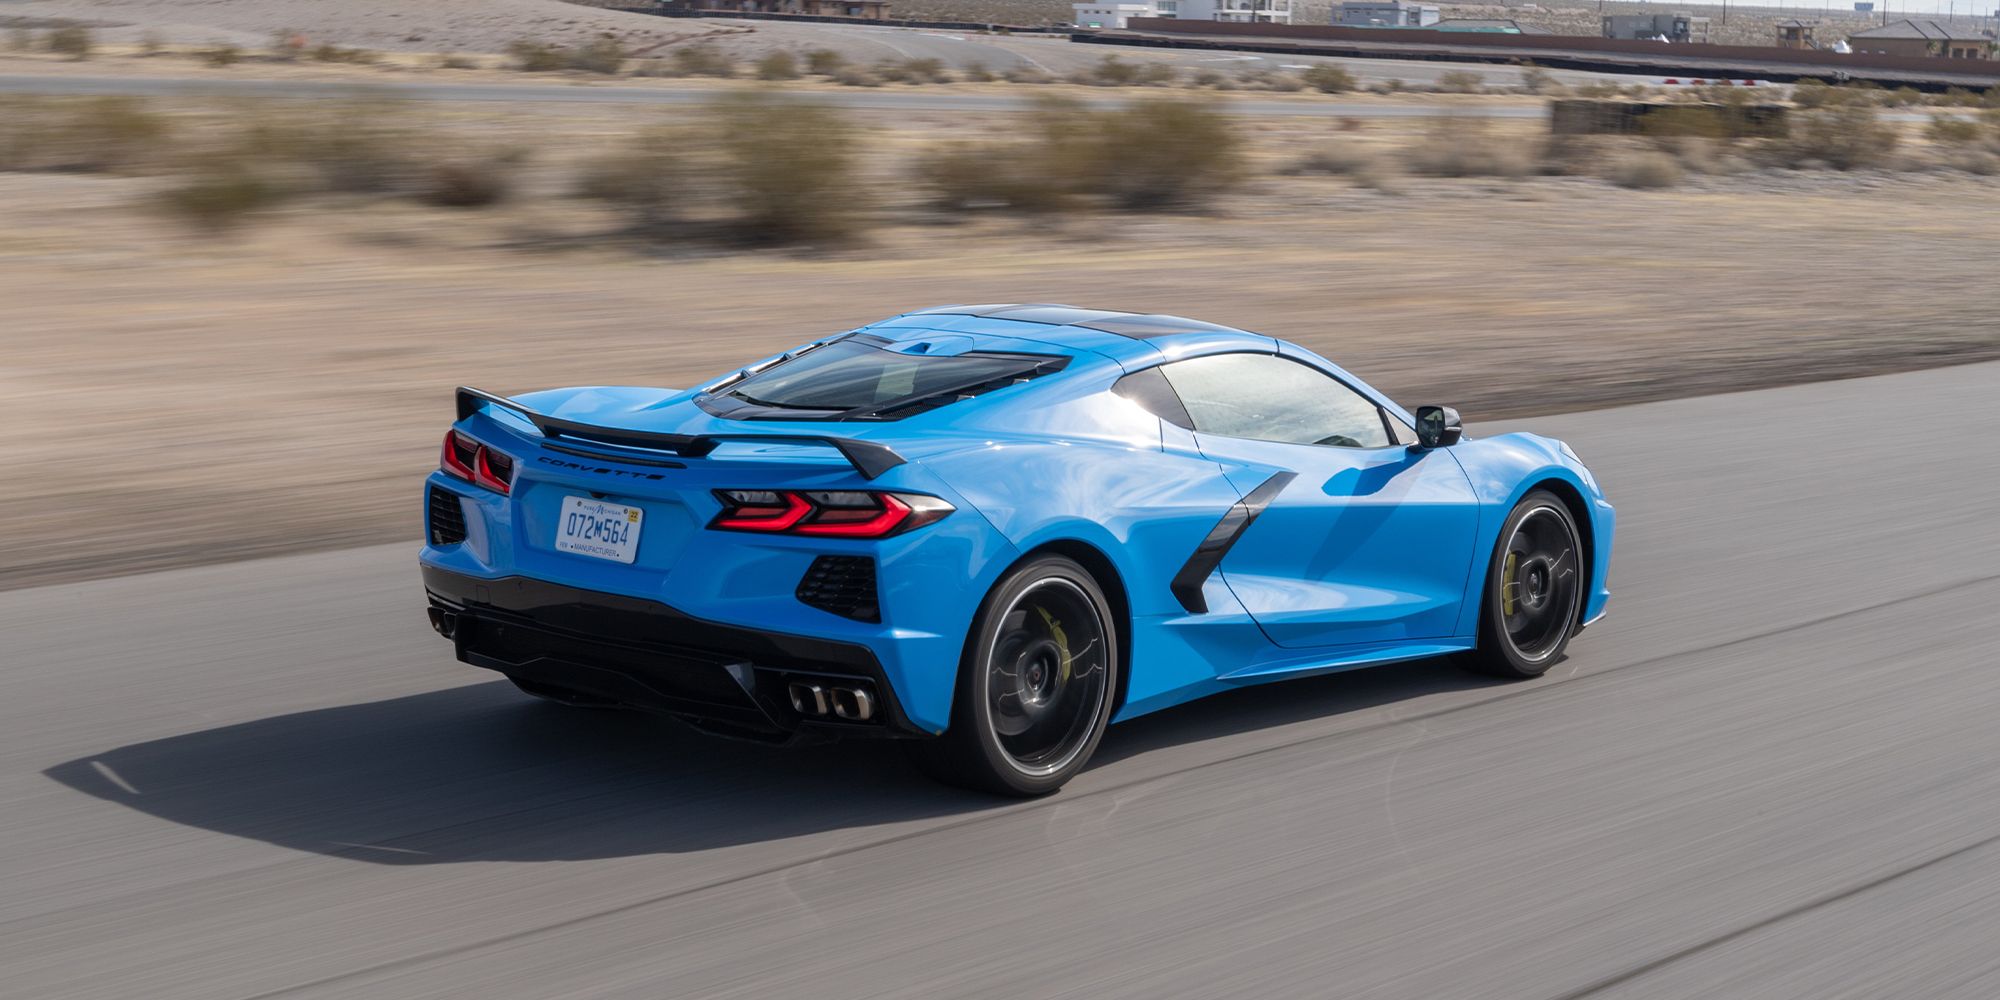 The rear of a blue C8 Corvette